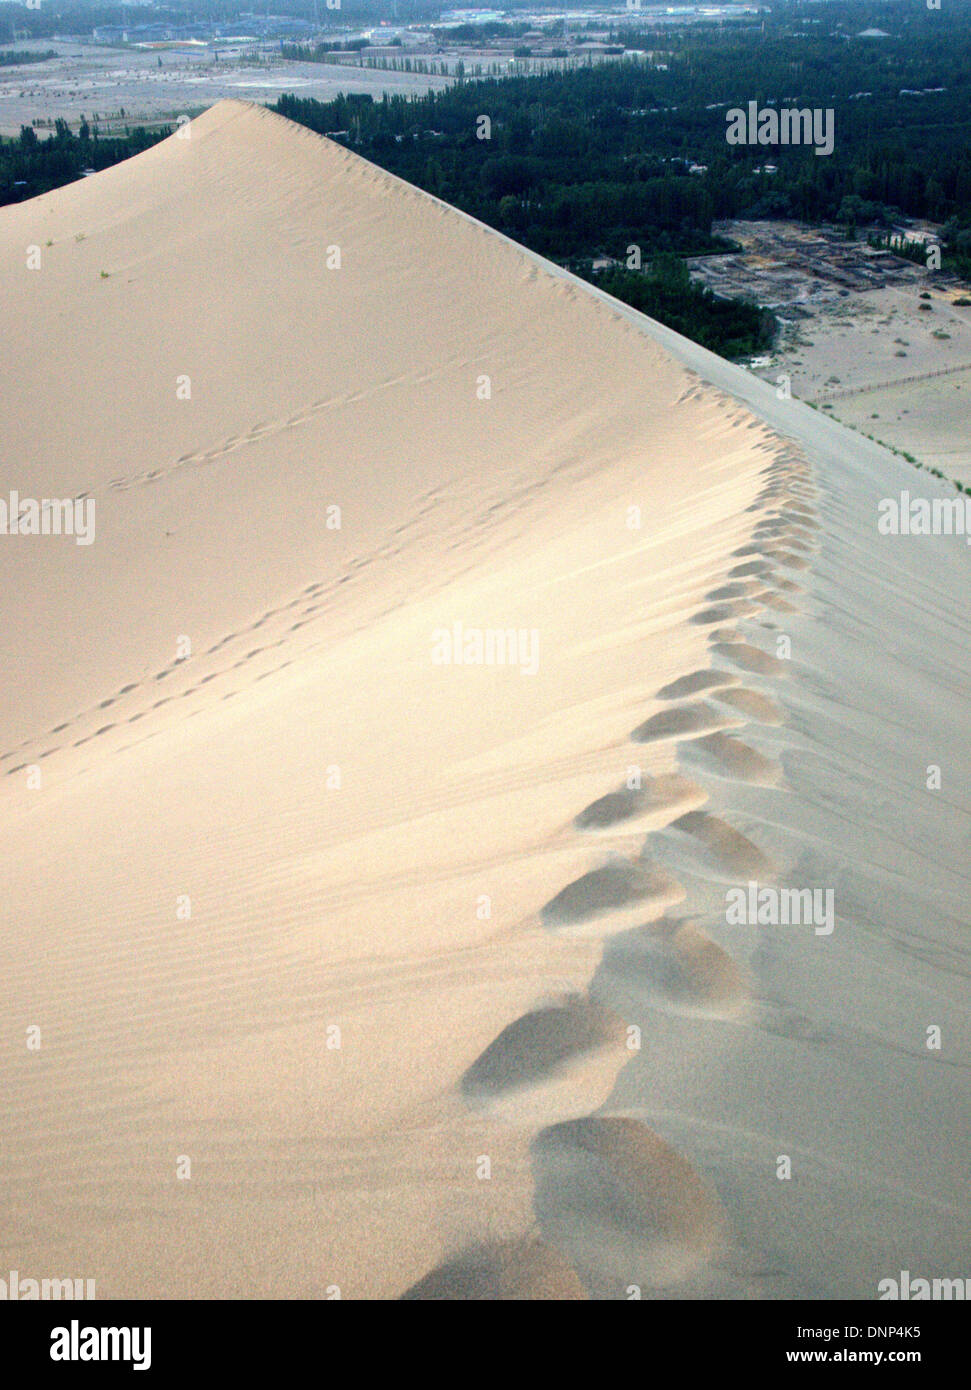 D'immenses dunes de sable autour de Yueyaquan lac croissant (crescent moon Lake), Mingsha Shan, au sud du Gansu, Dunhuang, Chine. Banque D'Images